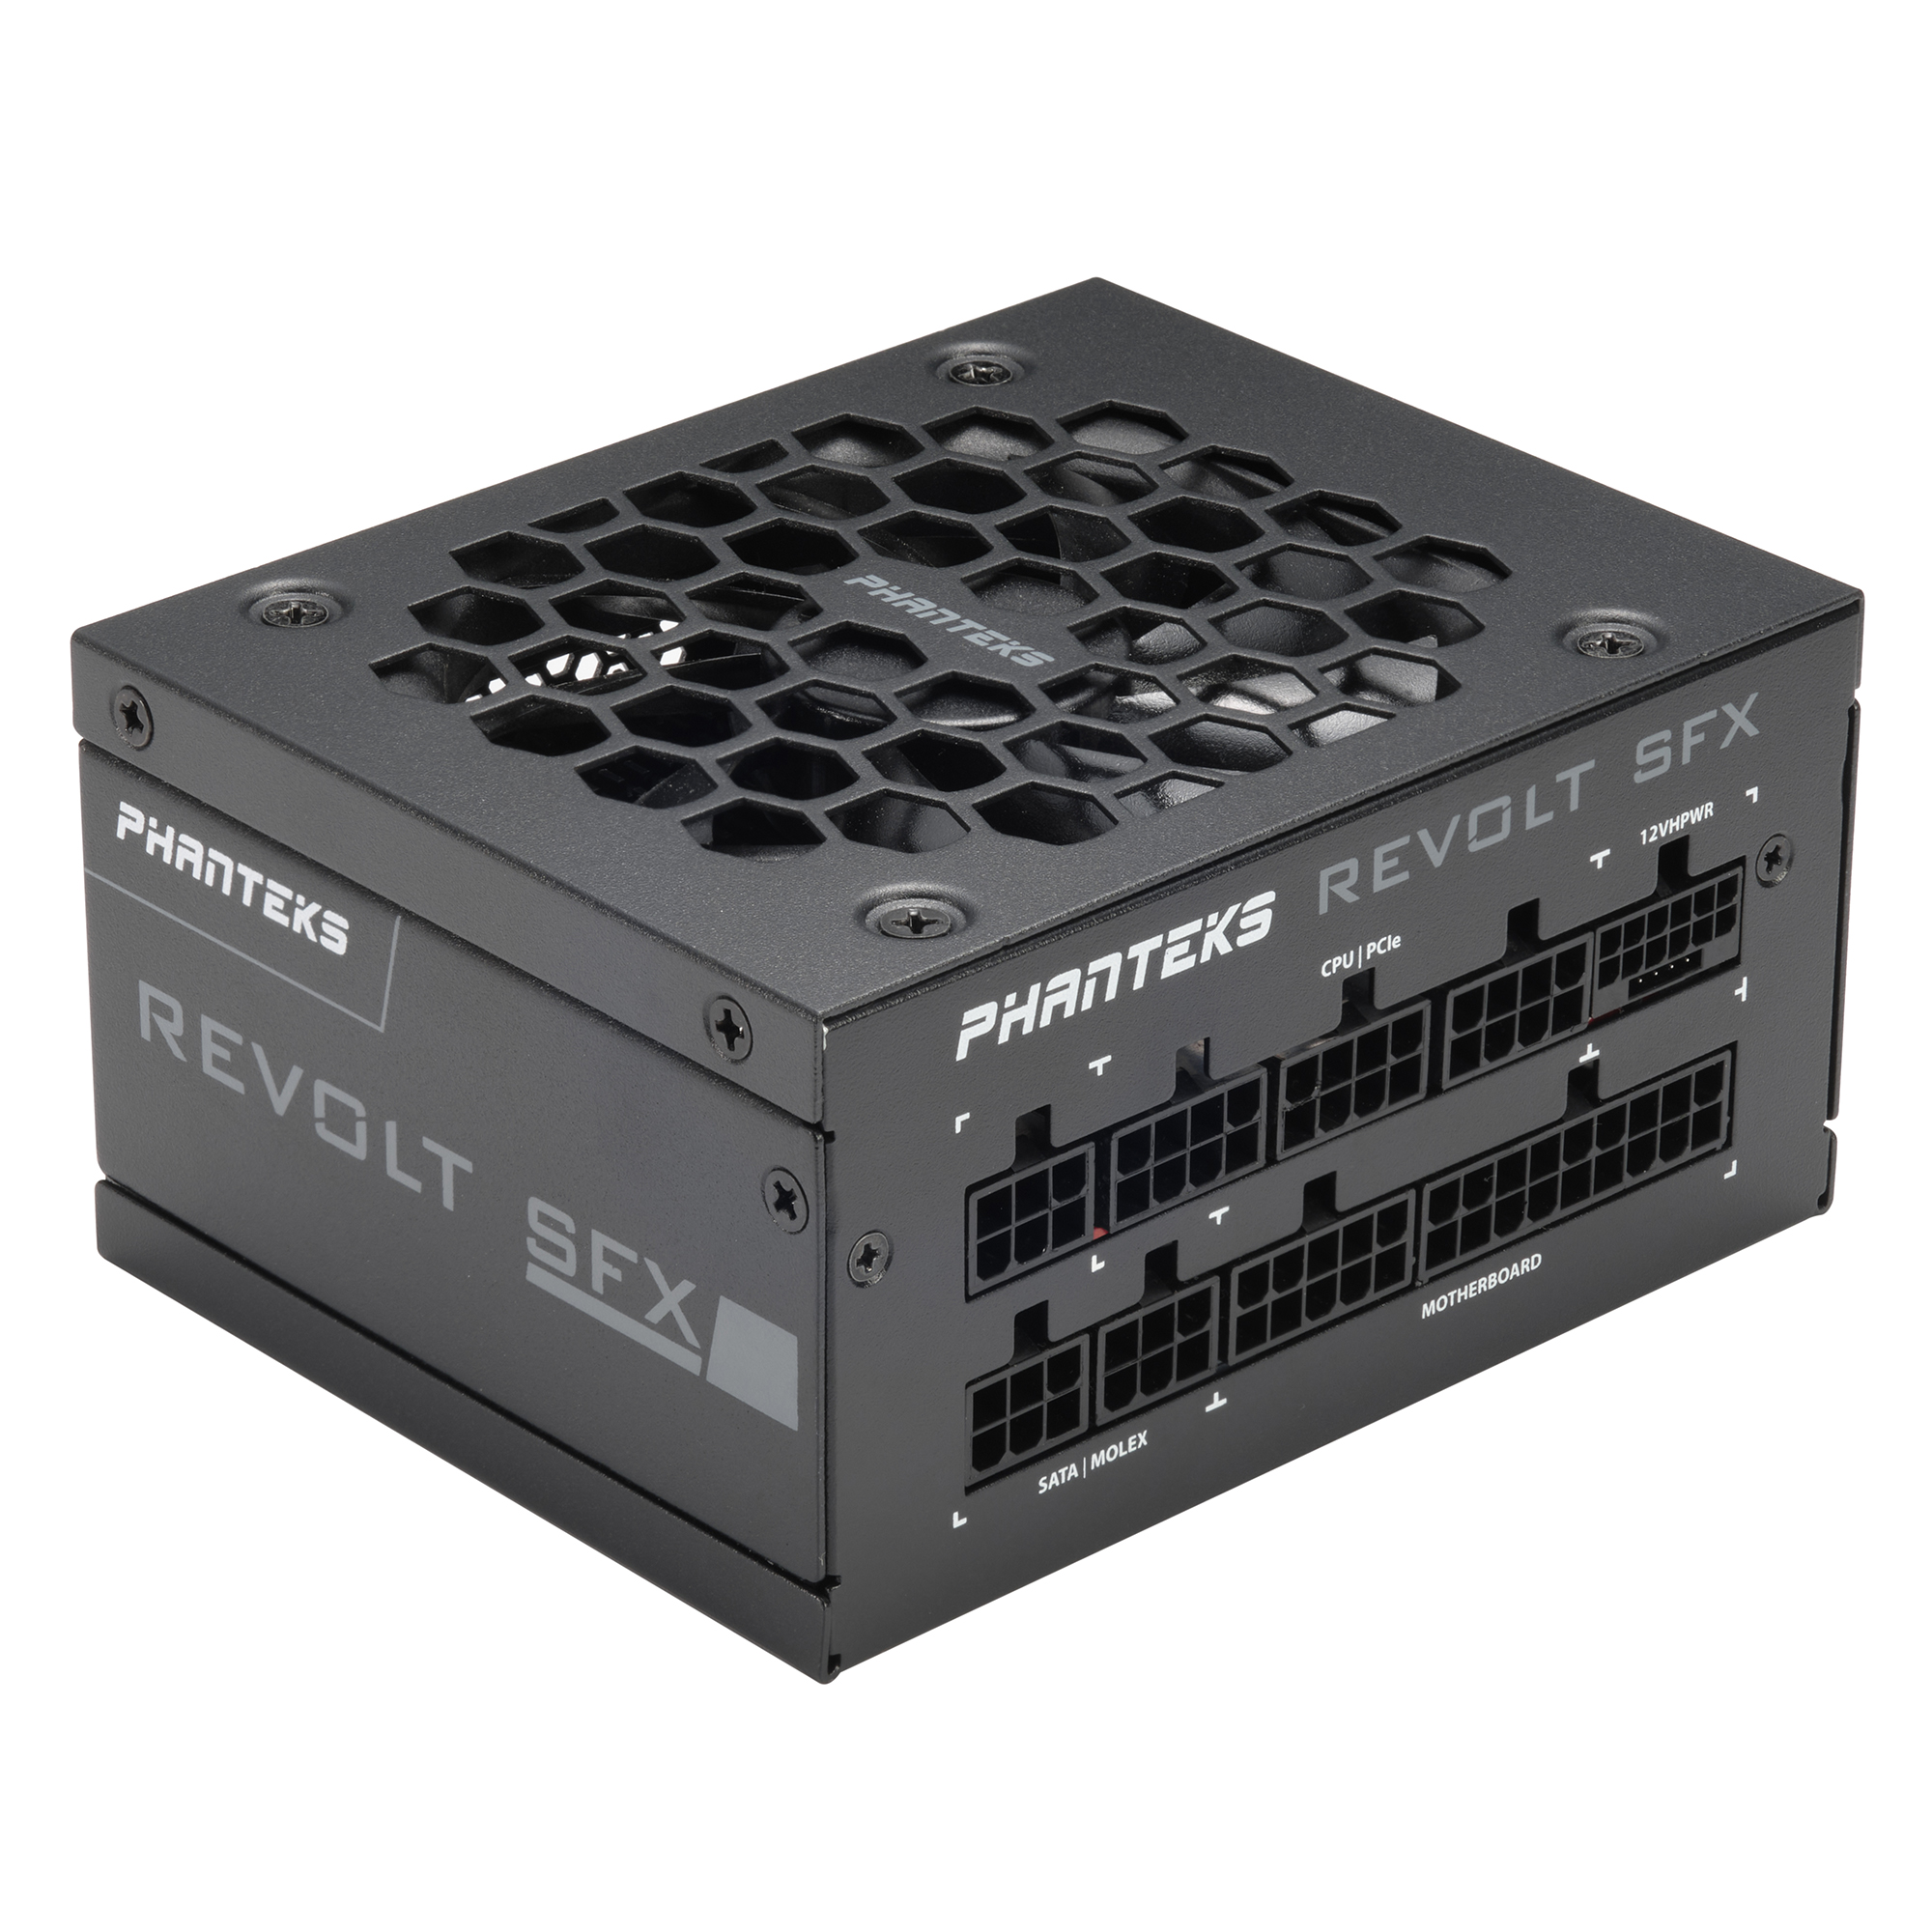 PHANTEKS Revolt SFX 80 PLUS Platinum PSU, modular, ATX 3.0 - 850 Watt